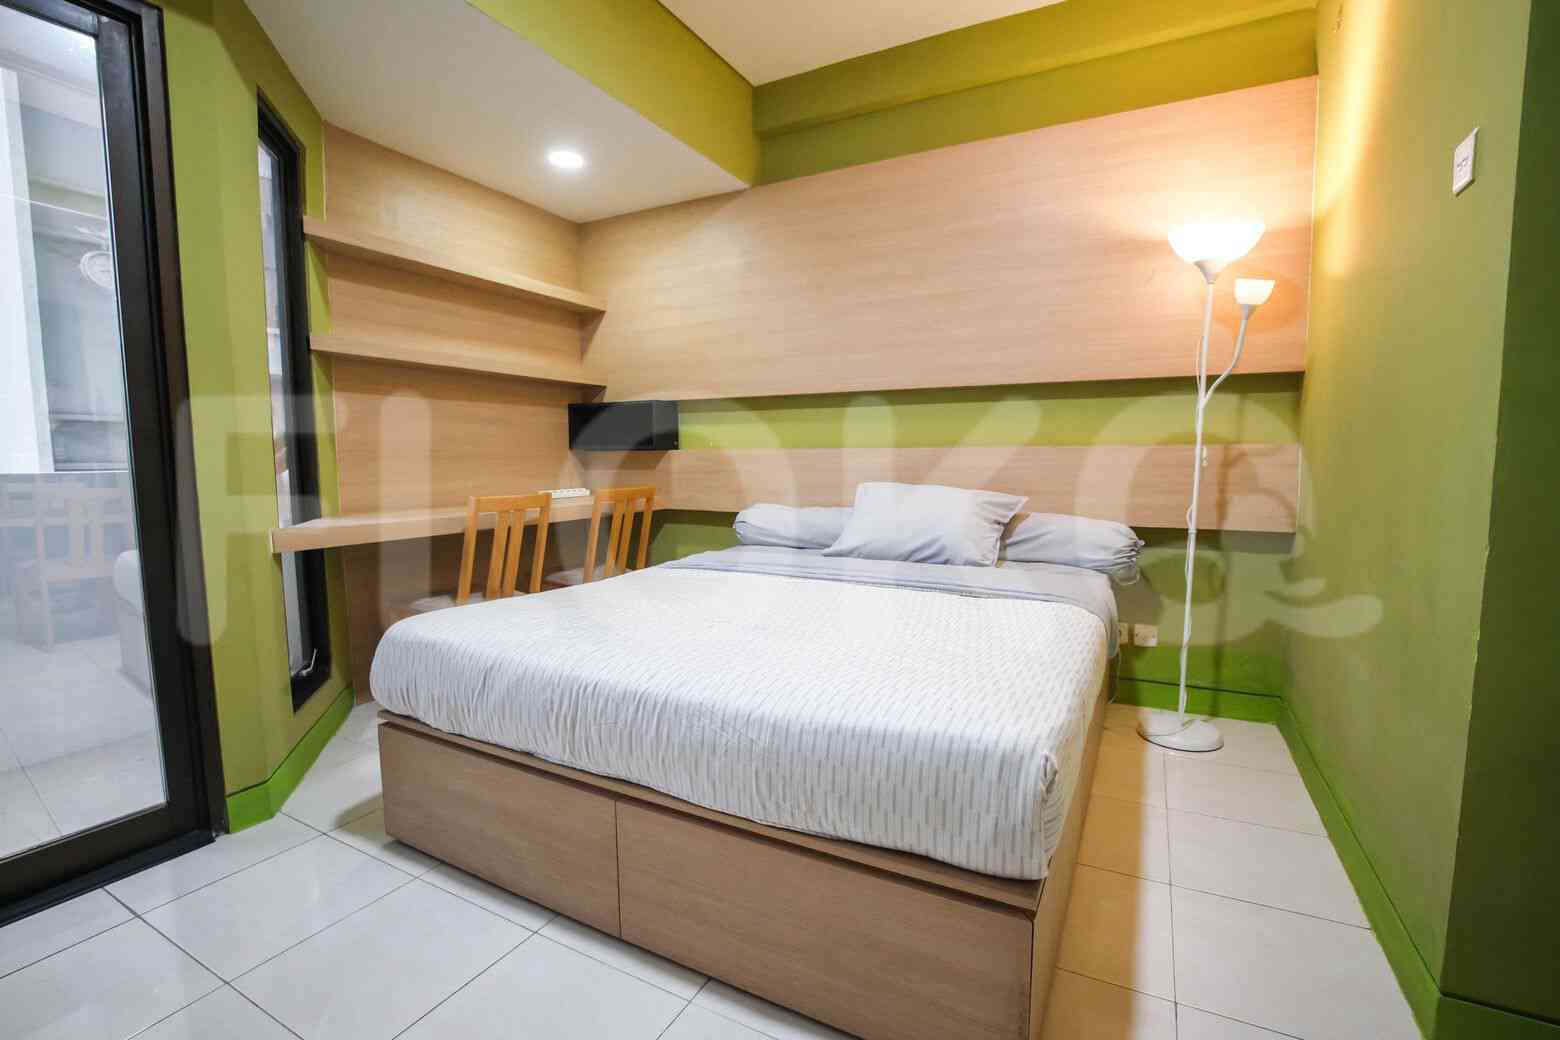 1 Bedroom on 15th Floor for Rent in Tamansari Sudirman - fsu5a1 1